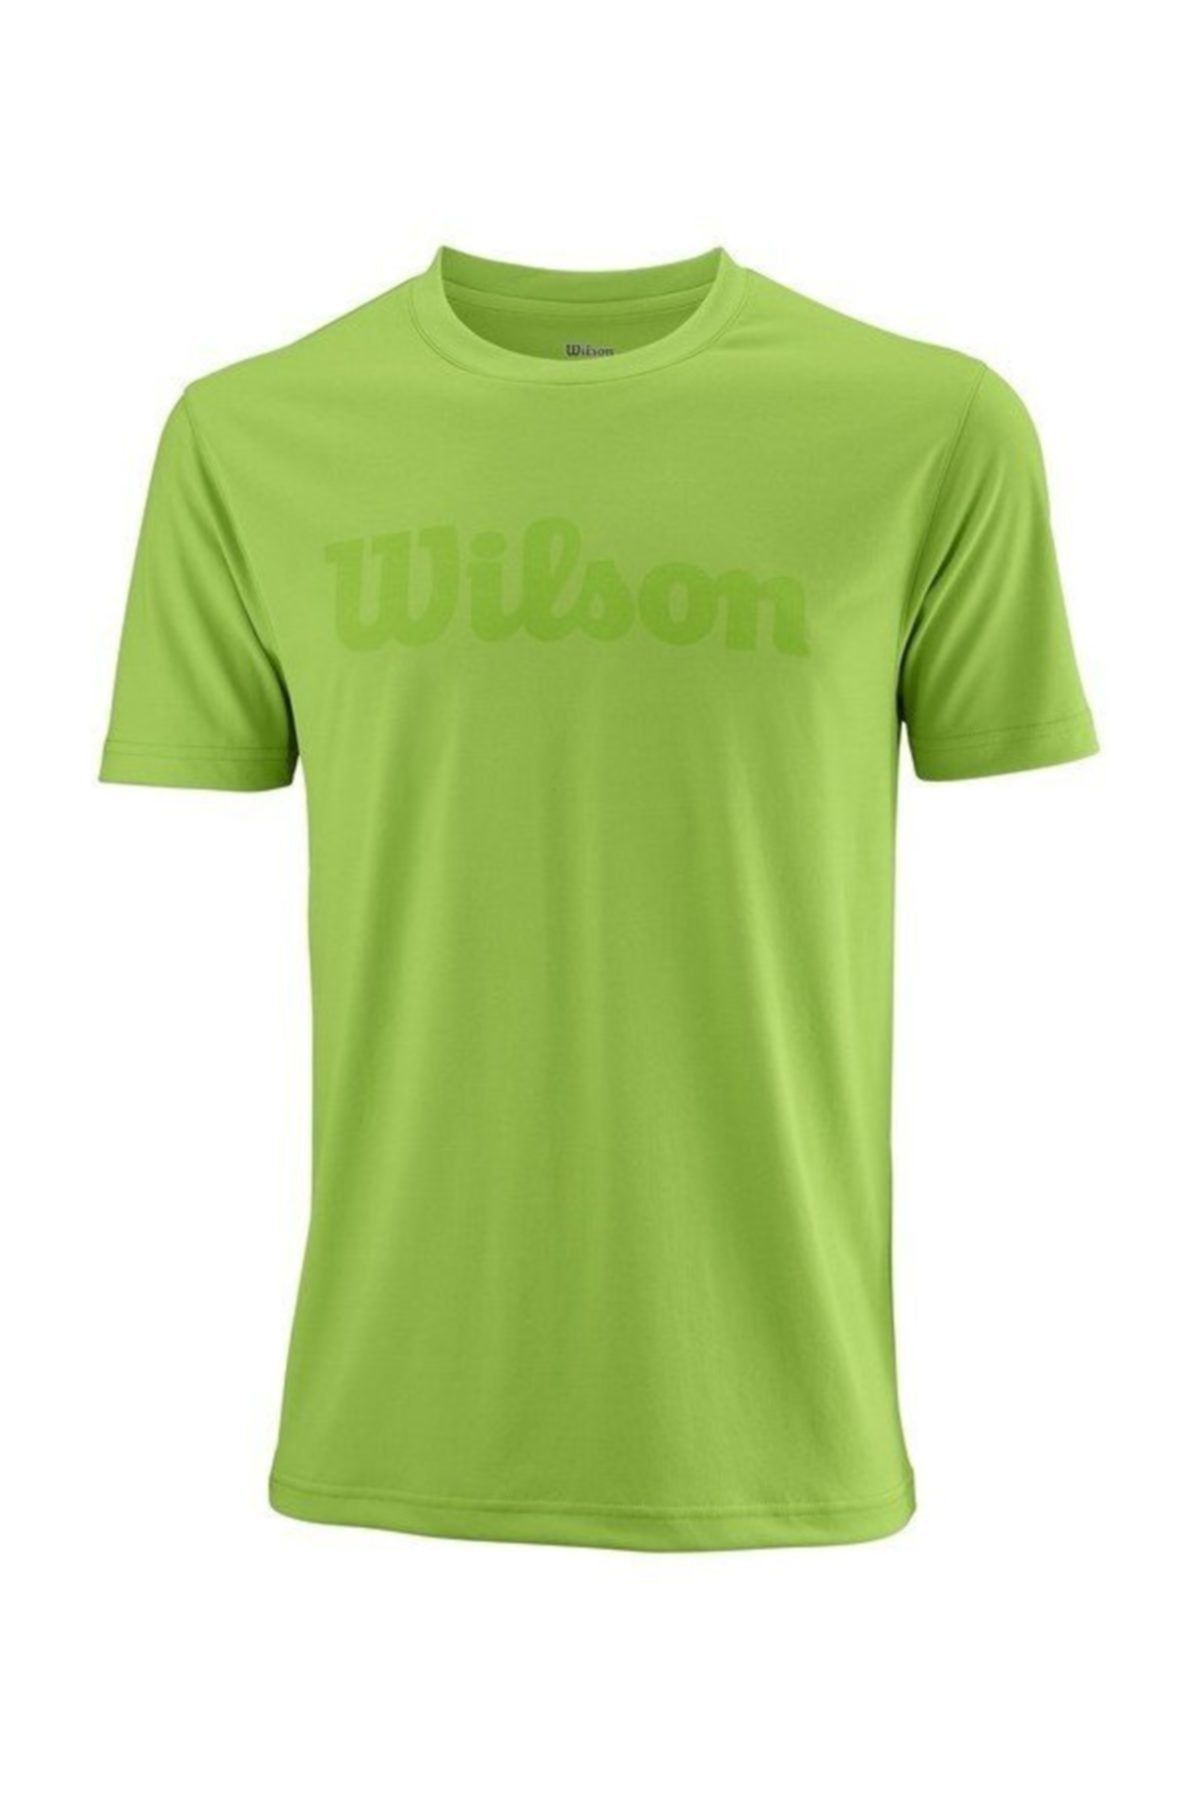 Wilson Uwıı Script Tech Tee Yeşil Erkek T-shirt Wra770302